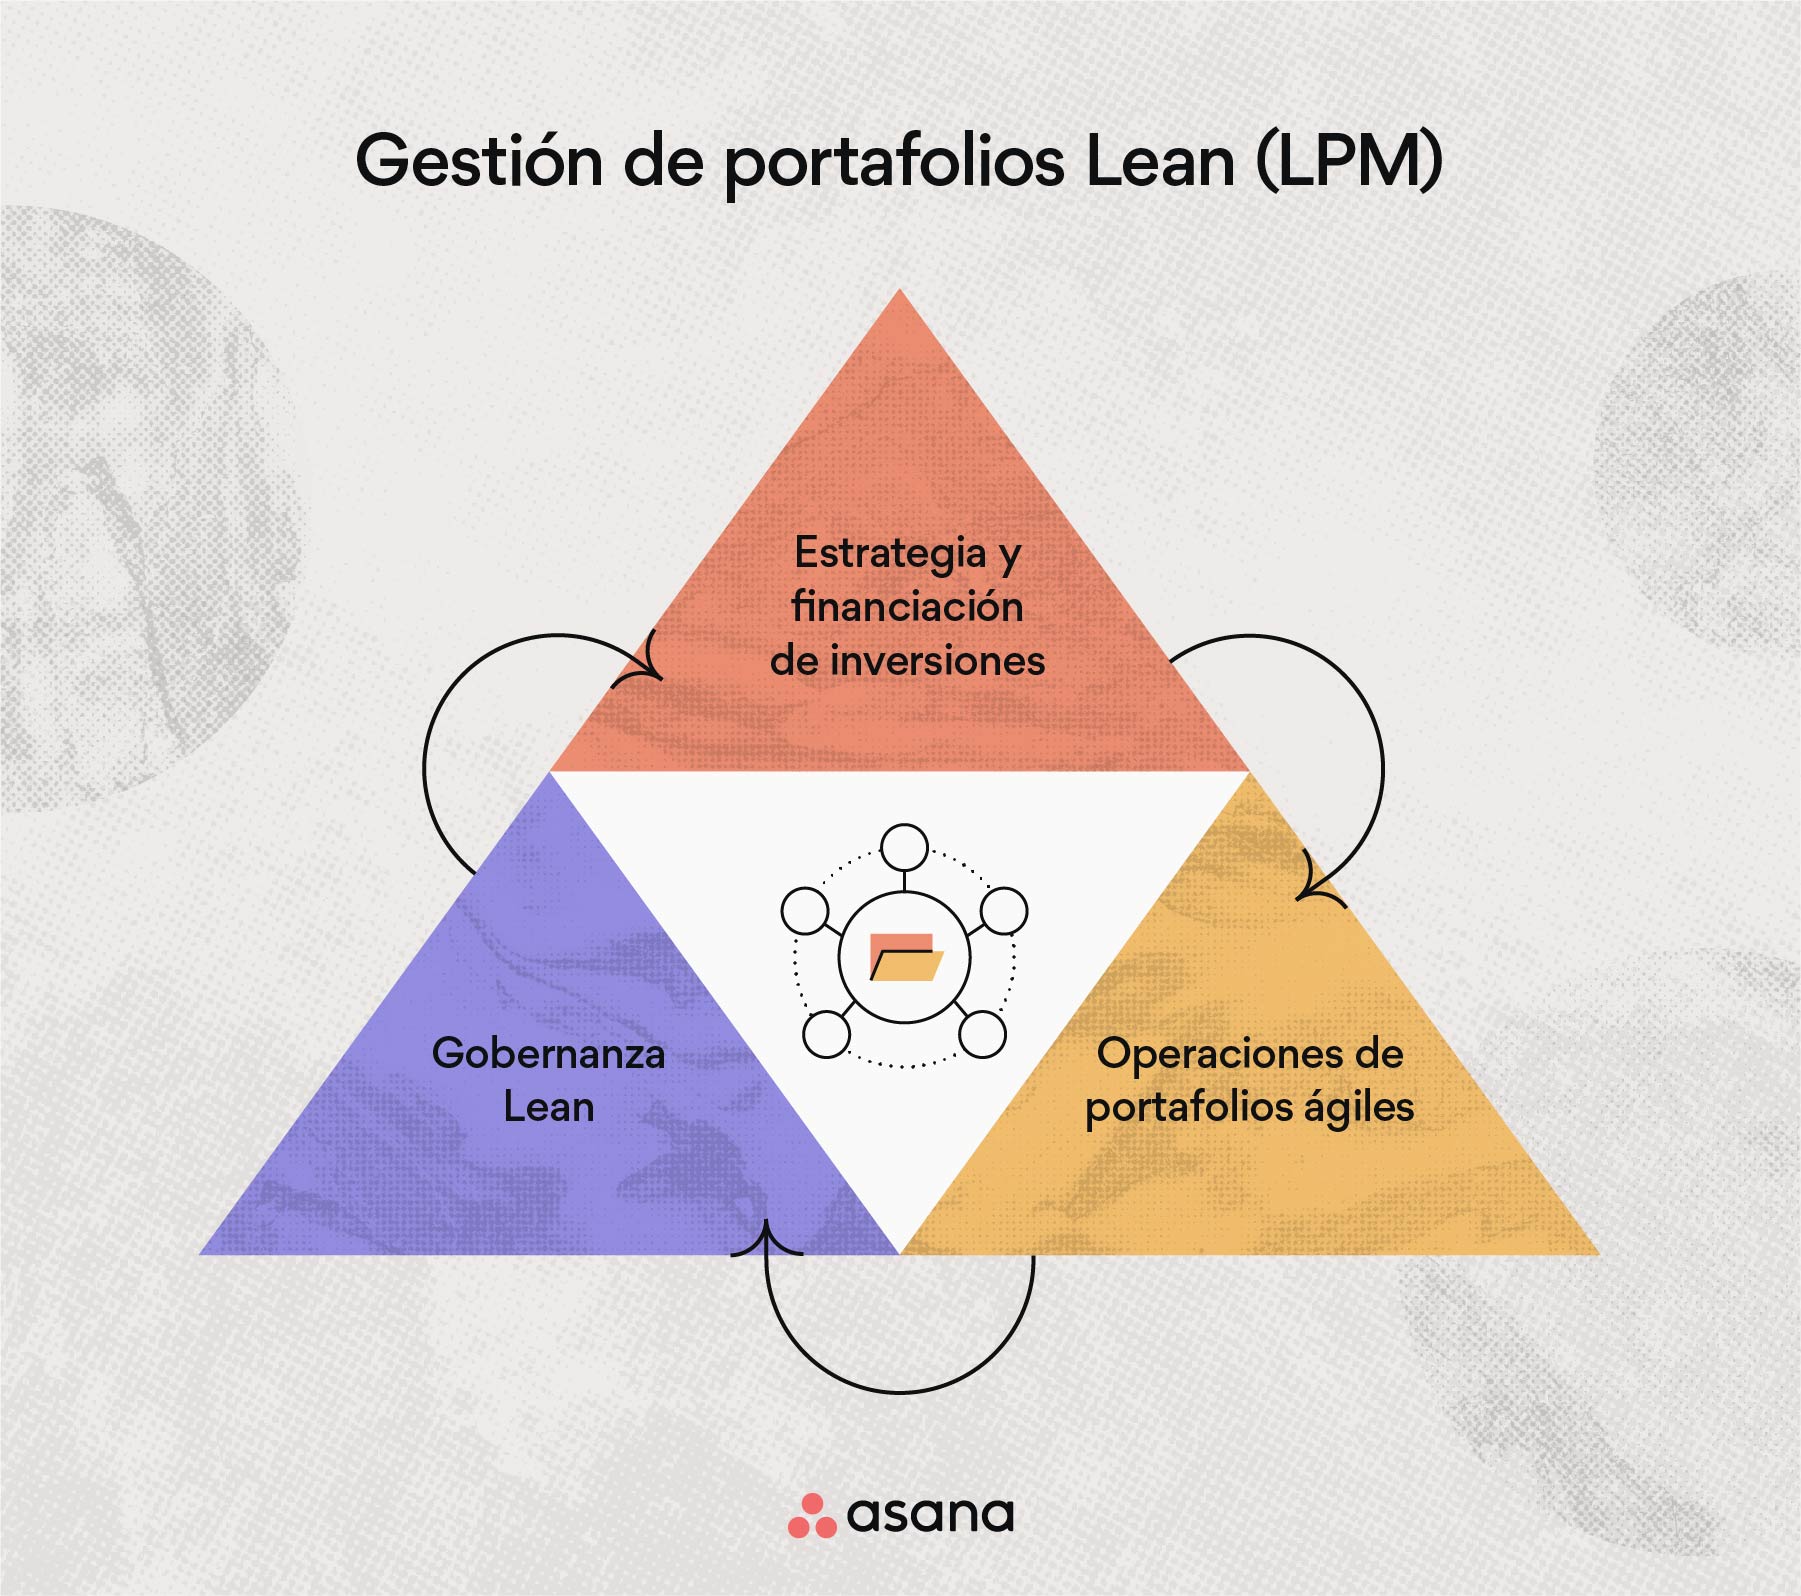 ¿Qué es la gestión de portafolios Lean (LPM)?